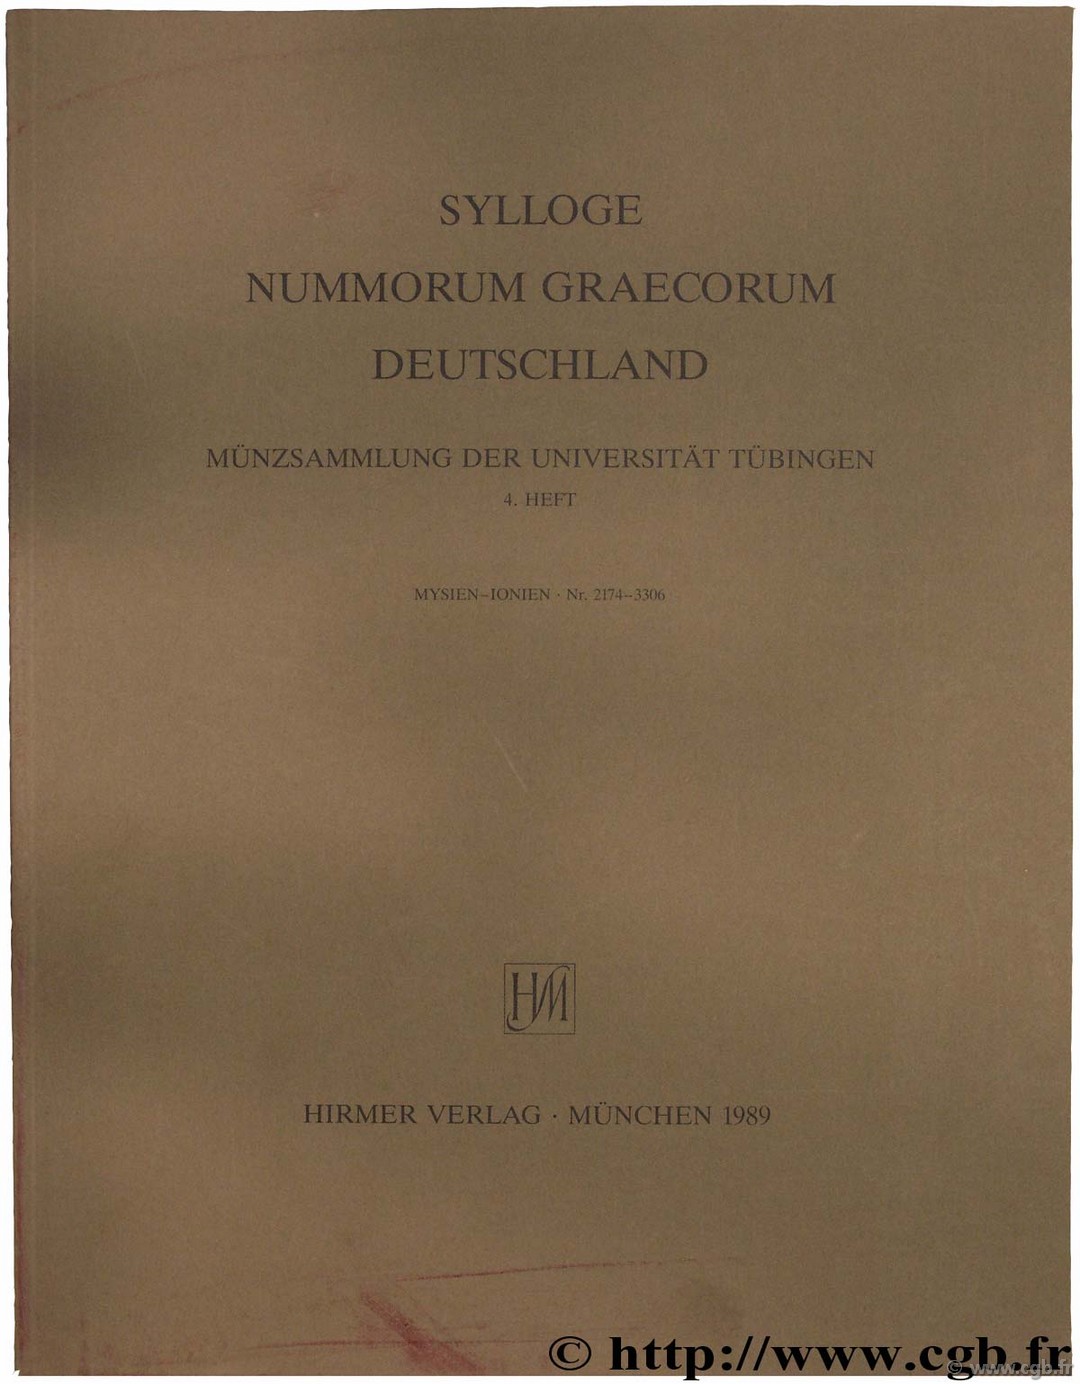 Sylloge Nummorum Graecorum, Münzsammlung der Universität Tübingen 4 heft, Mysien - Ionien n° 2174-3306 